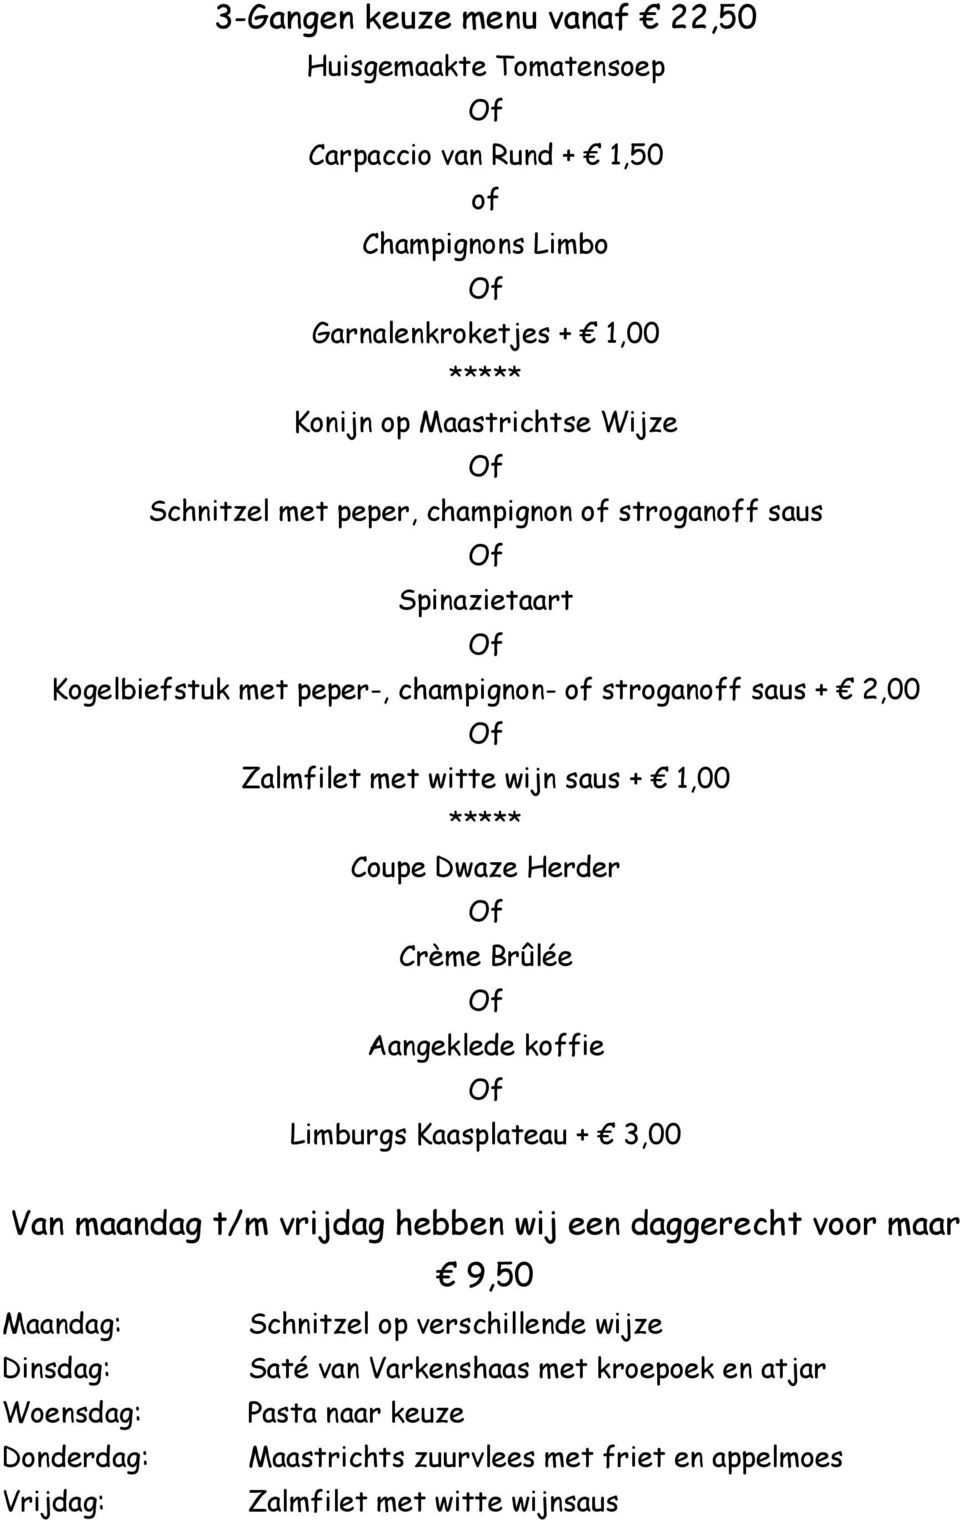 Herder Crème Brûlée Aangeklede koffie Limburgs Kaasplateau + 3,00 Van maandag t/m vrijdag hebben wij een daggerecht voor maar 9,50 Maandag: Schnitzel op verschillende wijze